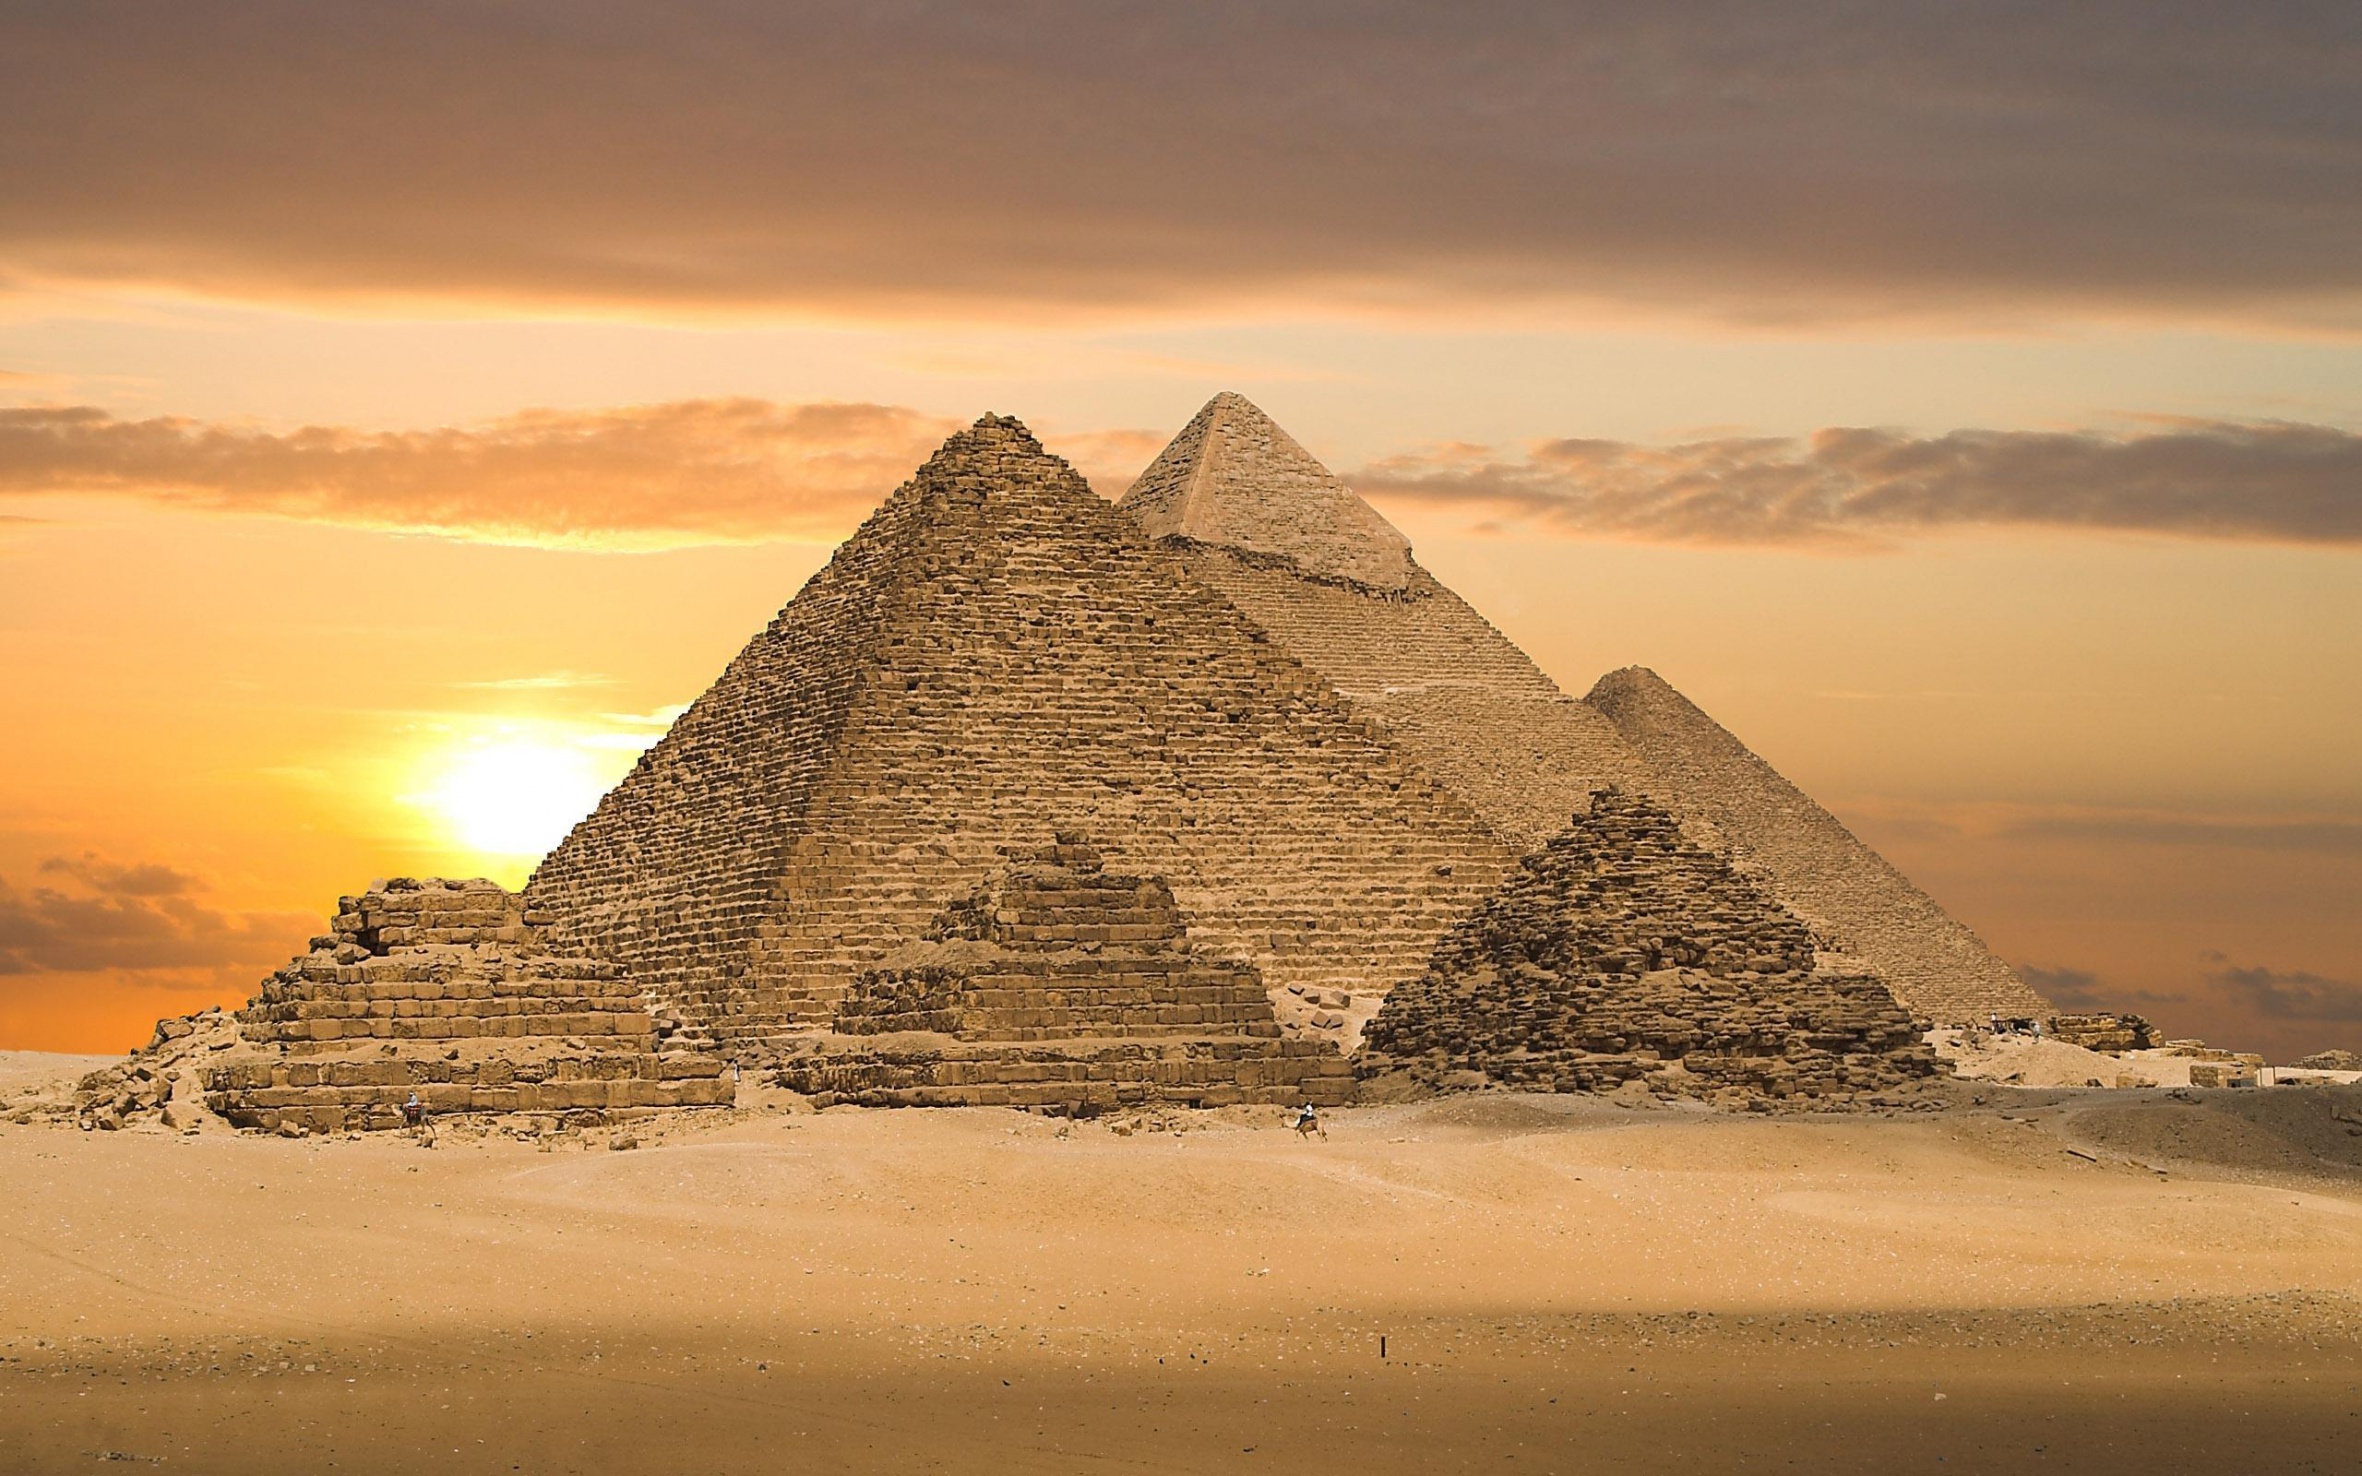 По количеству возведенных пирамид Казахстан скоро обойдет Египет